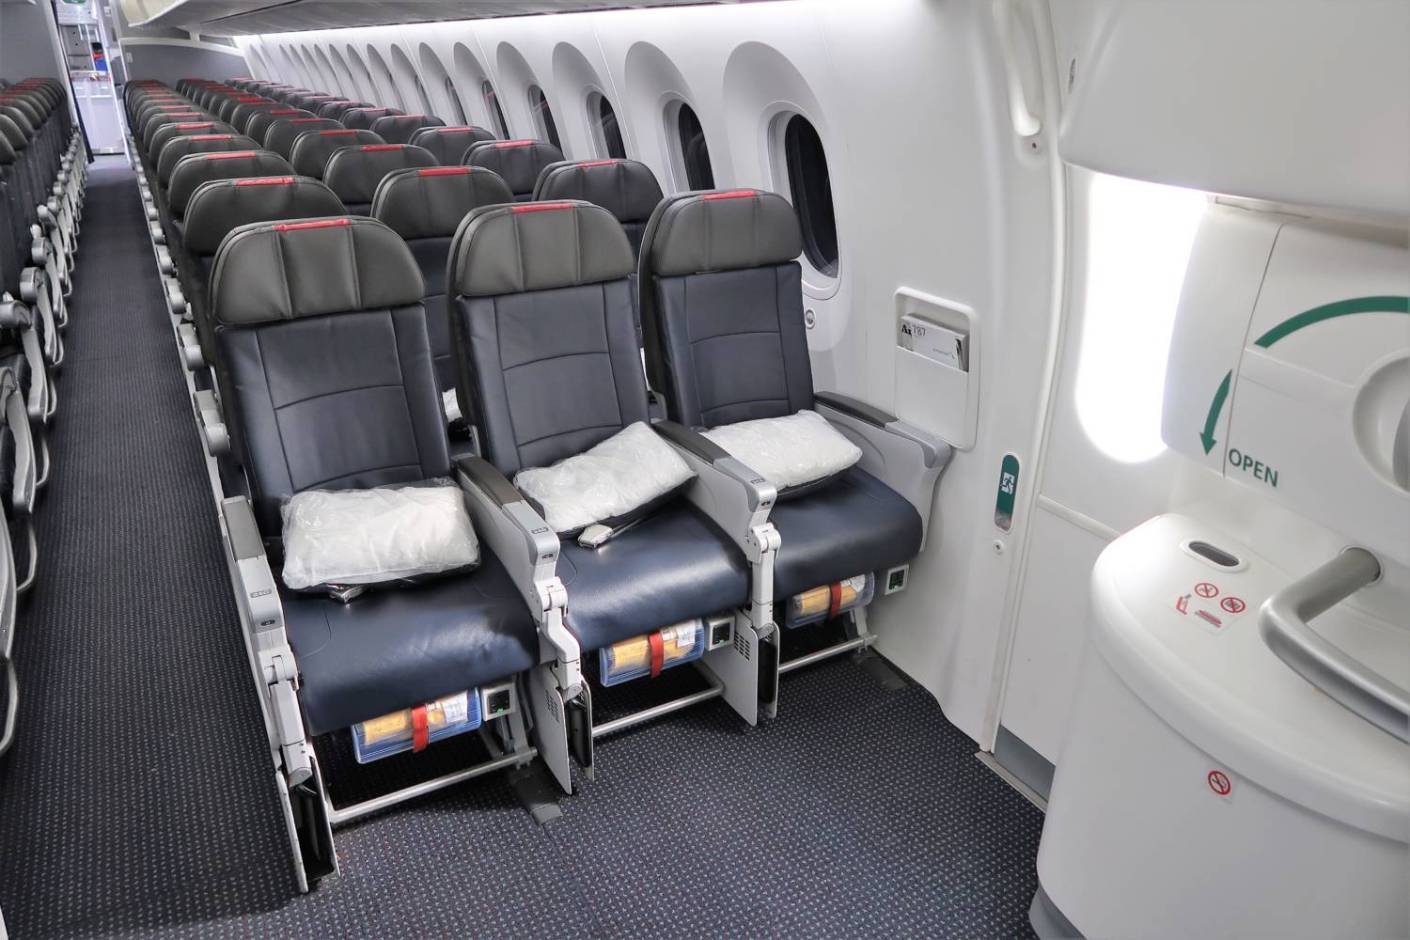 日本航空(JL)の非常口座席が有料で指定可能に。非常口座席について考えてみた